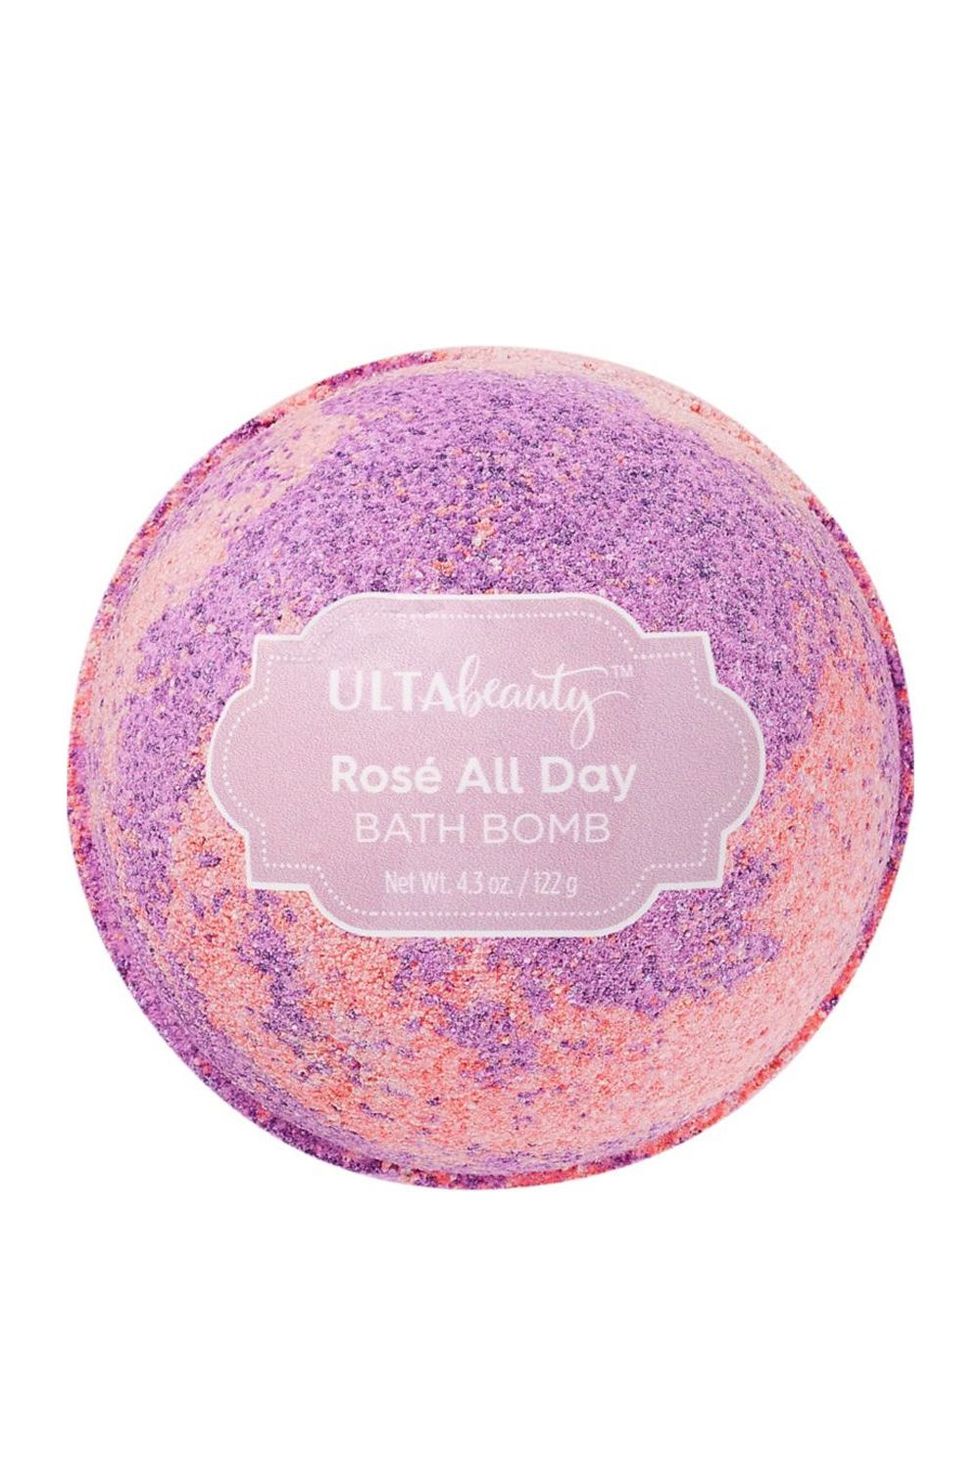 Ulta Beauty Rosé All Day Color Marble Bath Bomb